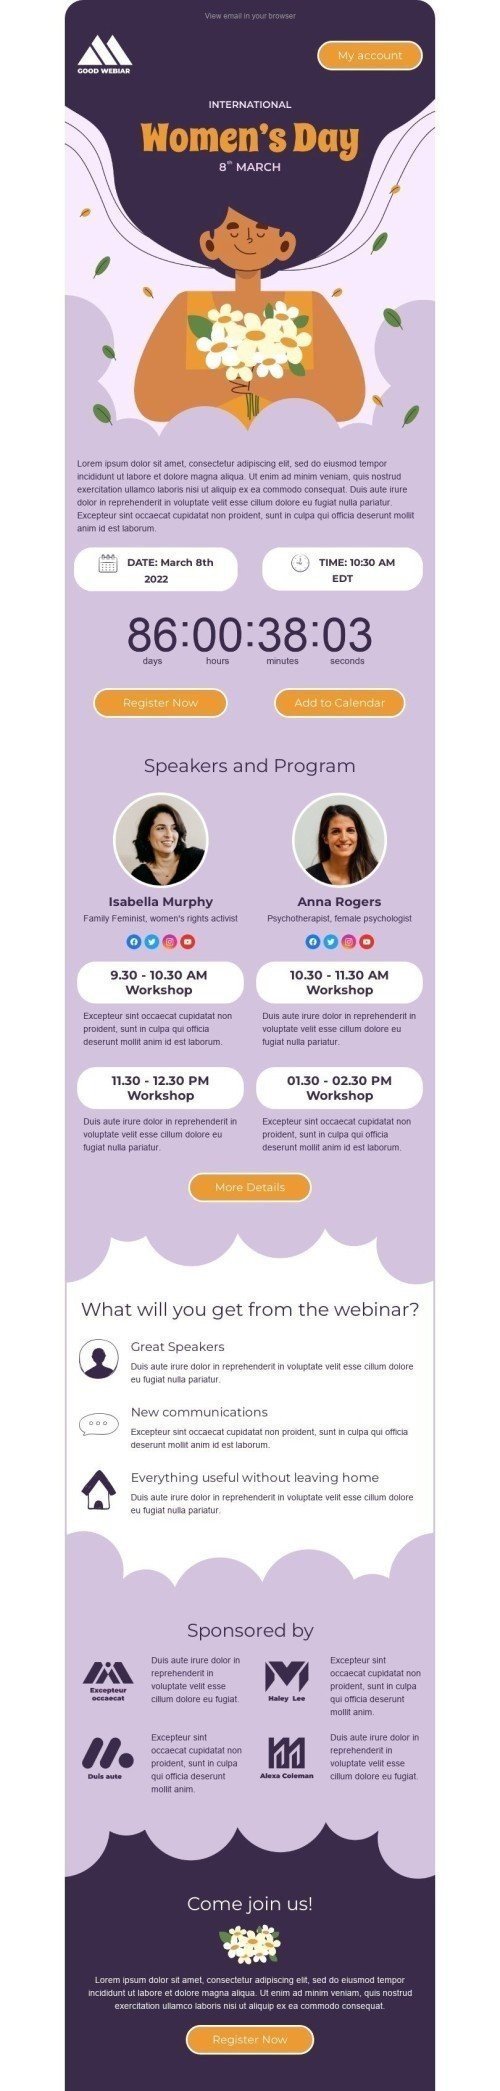 Modelo de E-mail de «Webinar para mulheres» de Dia da Mulher para a indústria de Webinars Visualização de dispositivo móvel